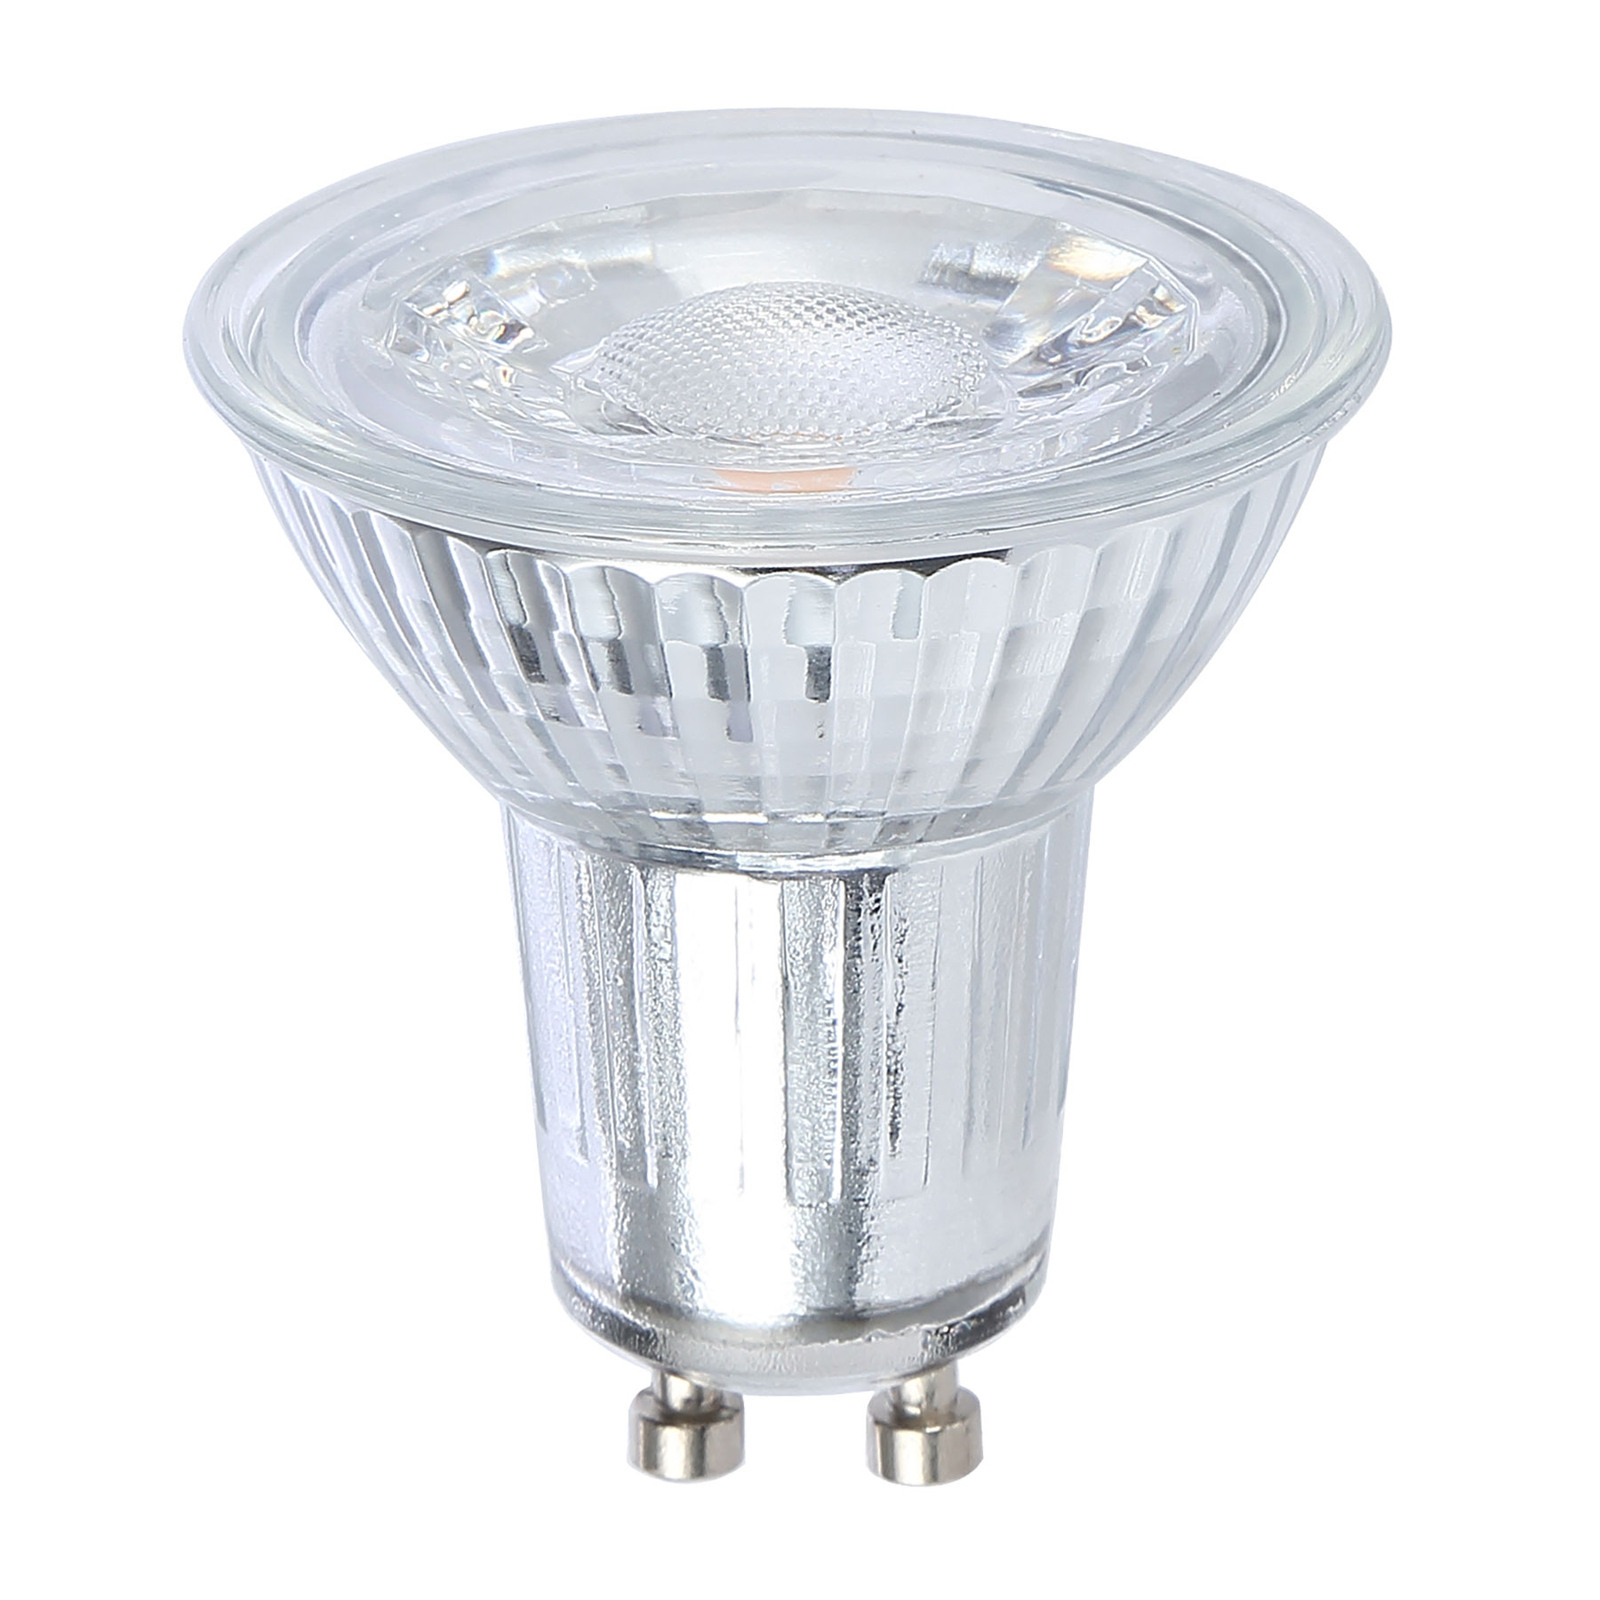 Reflector LED bulb GU10 7W 600lm warm white 4-pack